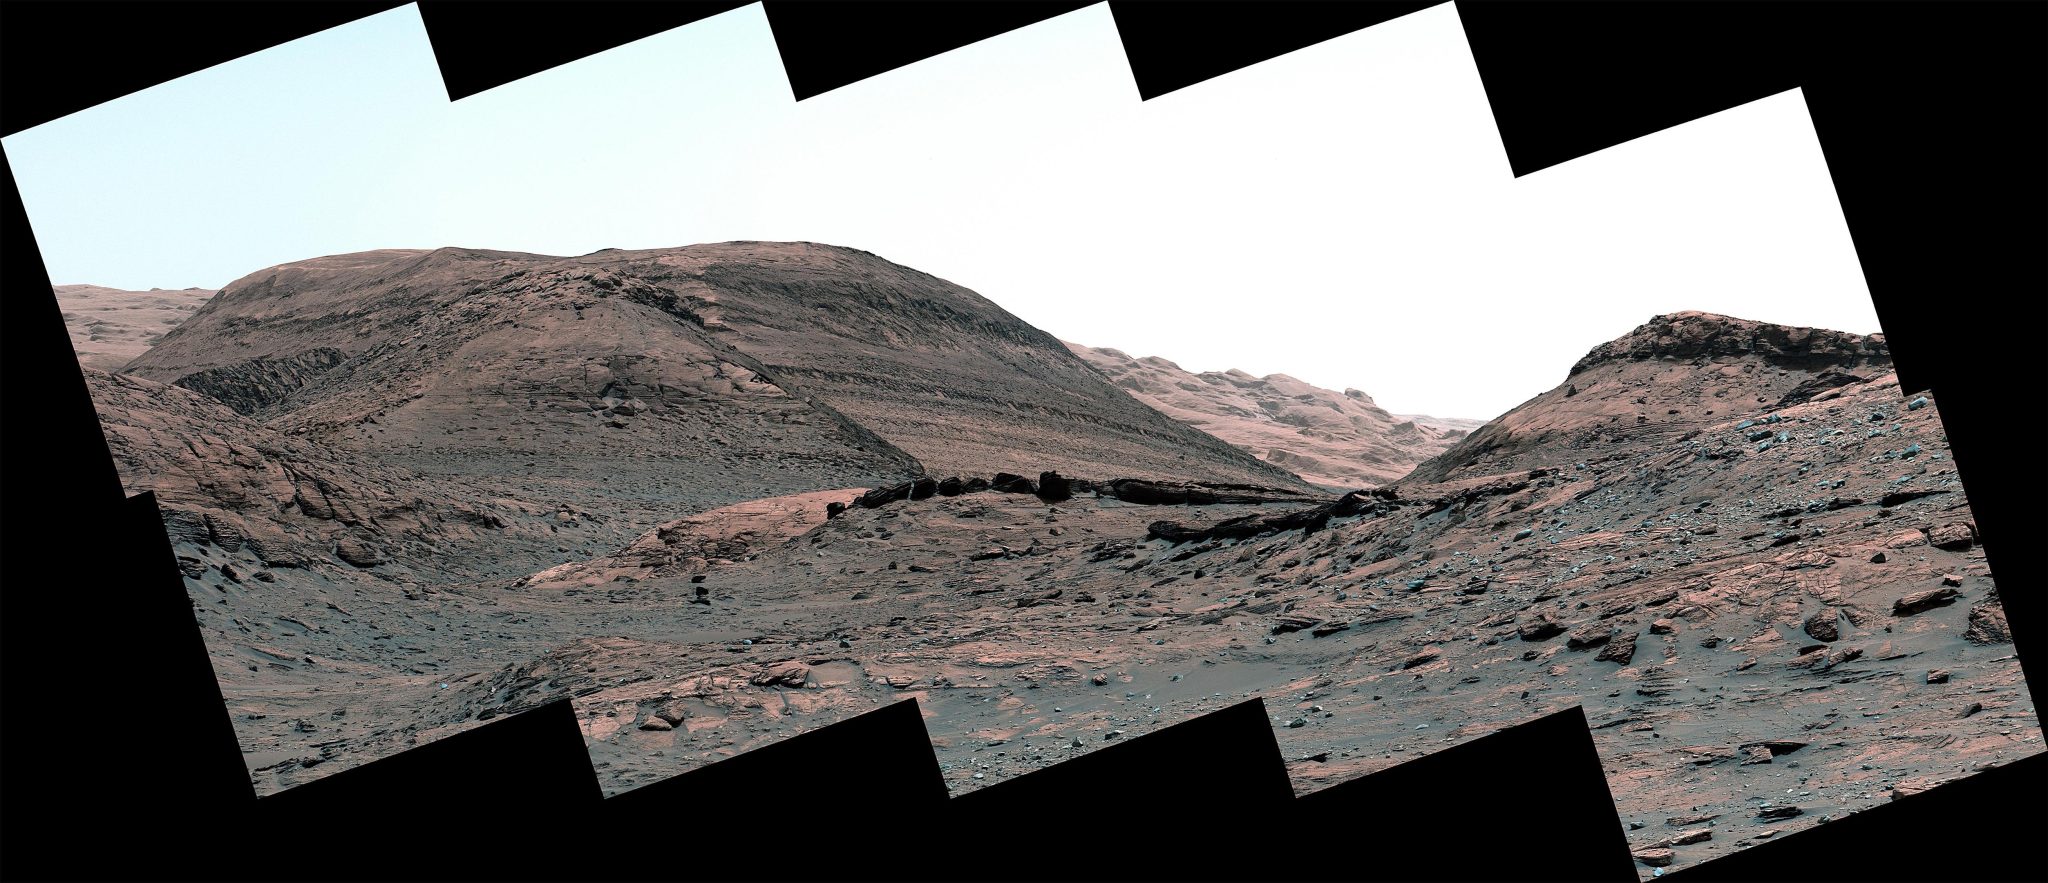 El rover Curiosity de la NASA captura impresionantes vistas de Marte – Revelando misterios del pasado antiguo